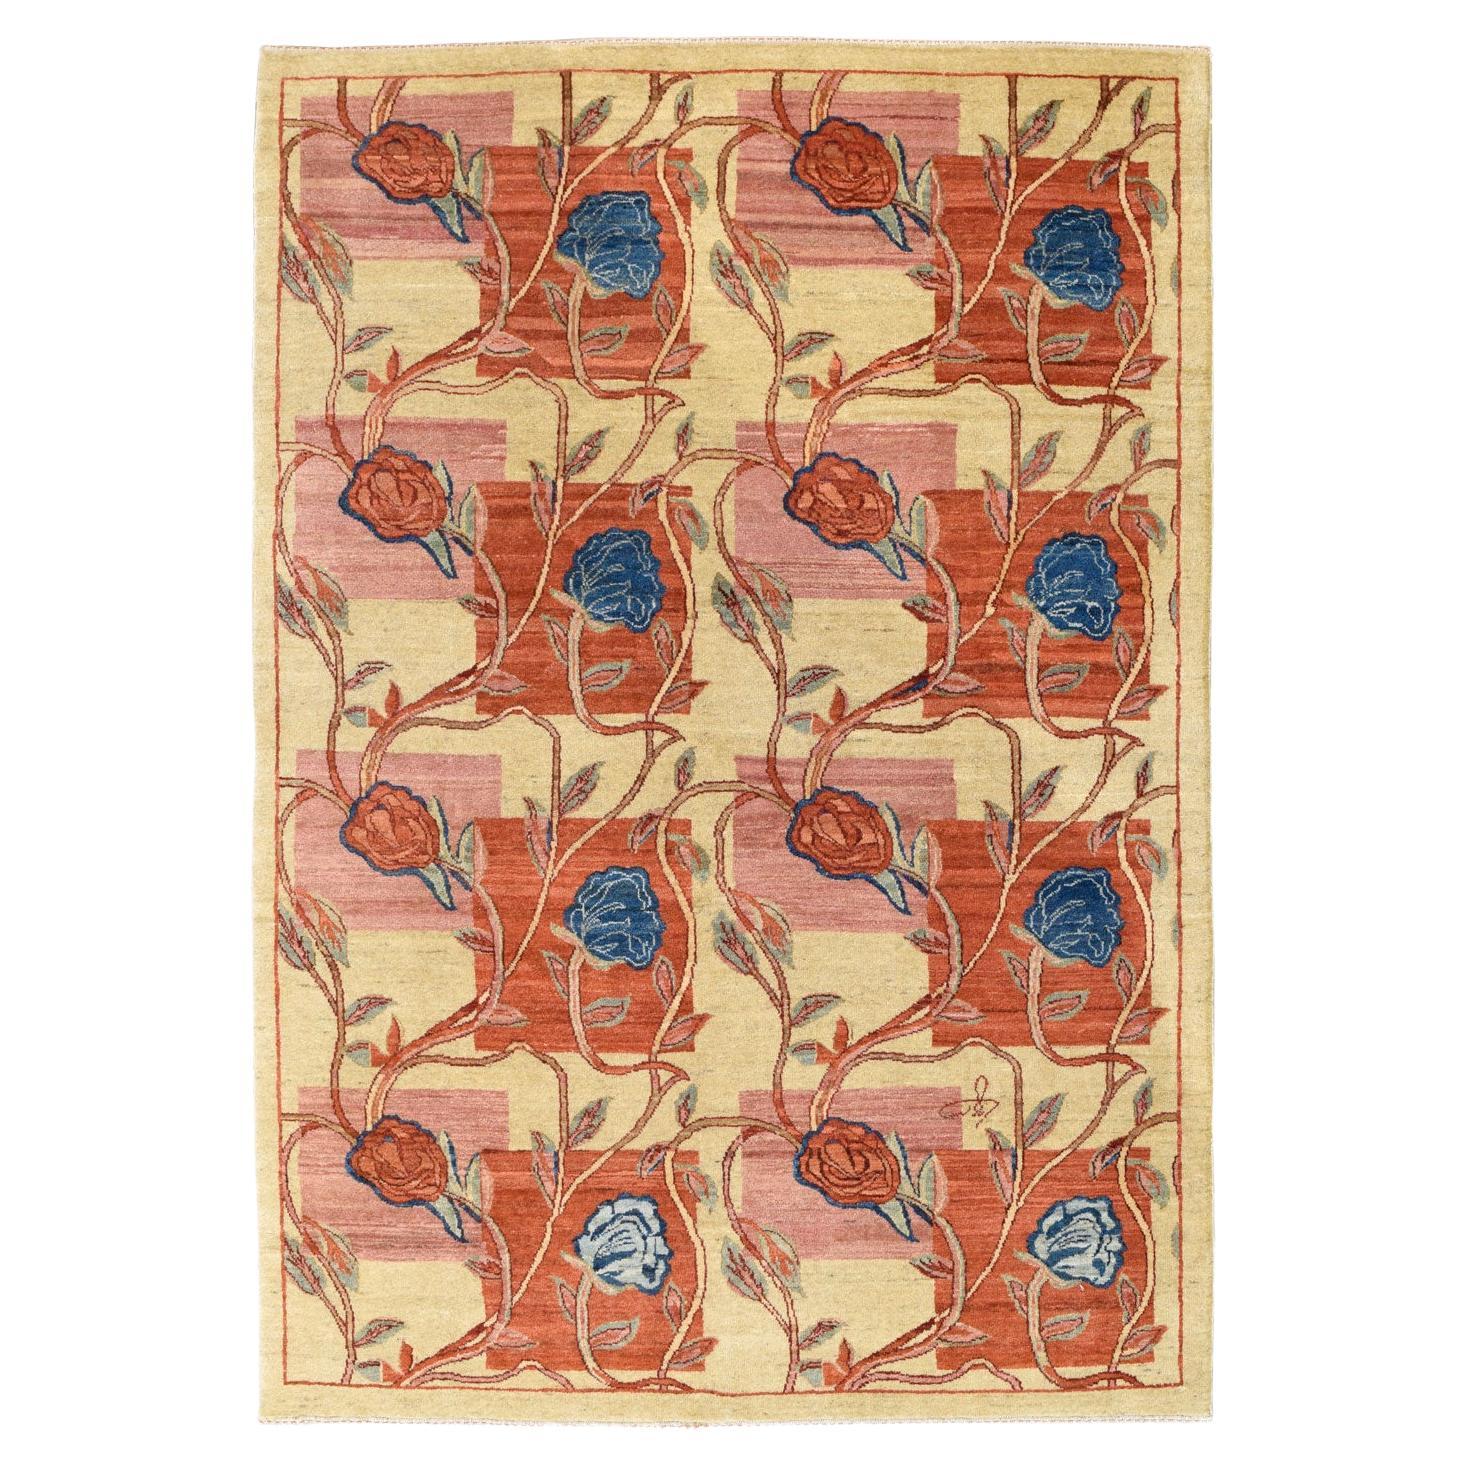 Tapis persan Orley Shabahang en laine rouge, rose, bleu et crème à motifs floraux, 4 x 6 pieds